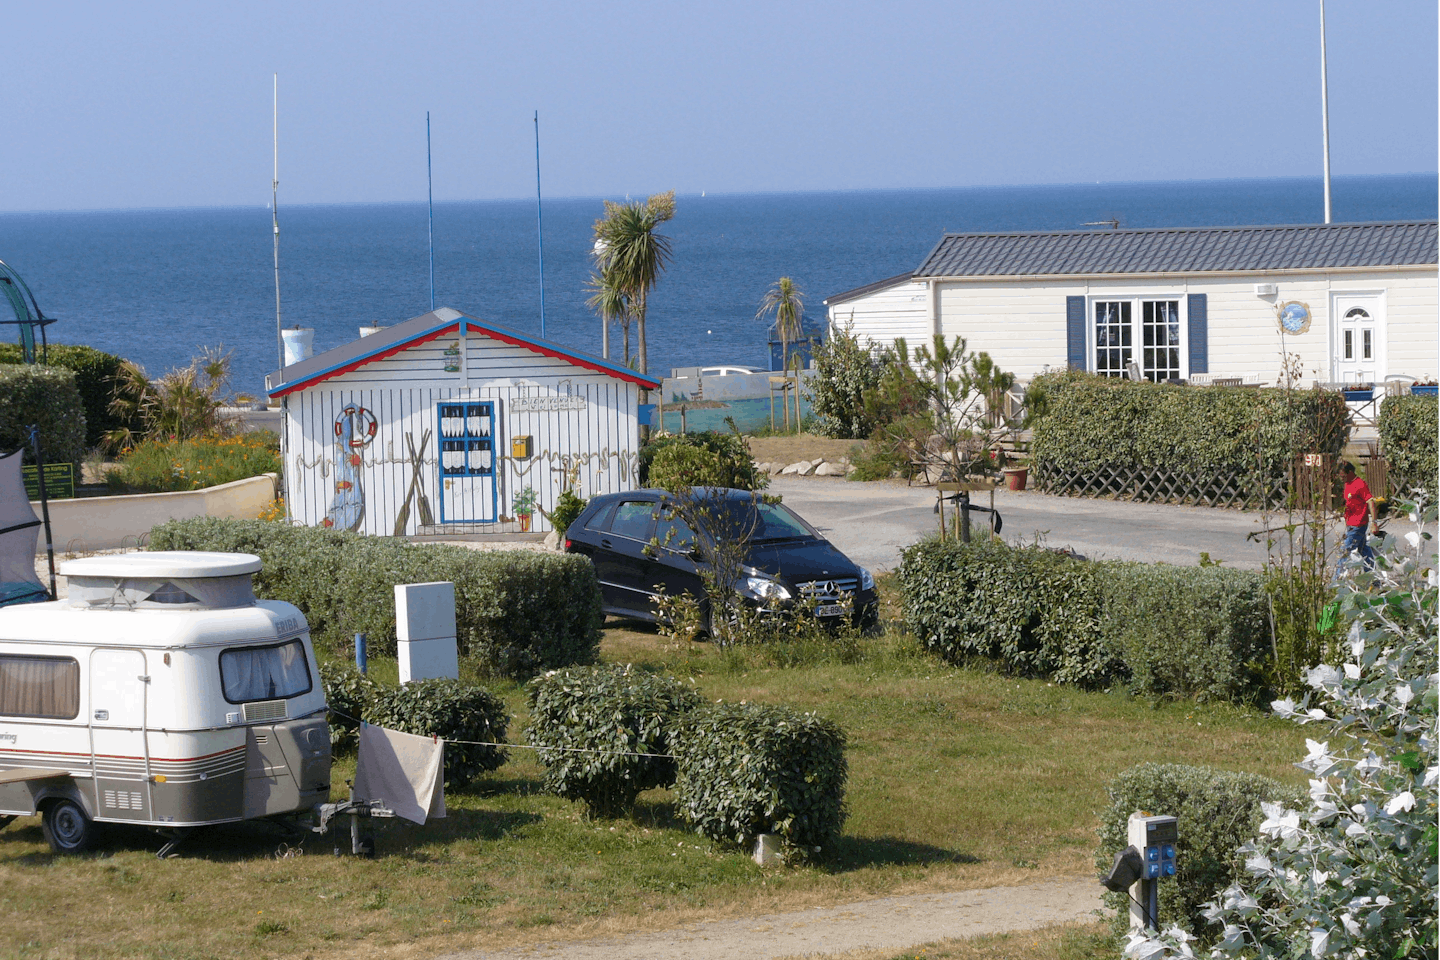 L'Atlantys - Blick auf das Gelände vom Campingplatz mit direktem Zugang zum Meer